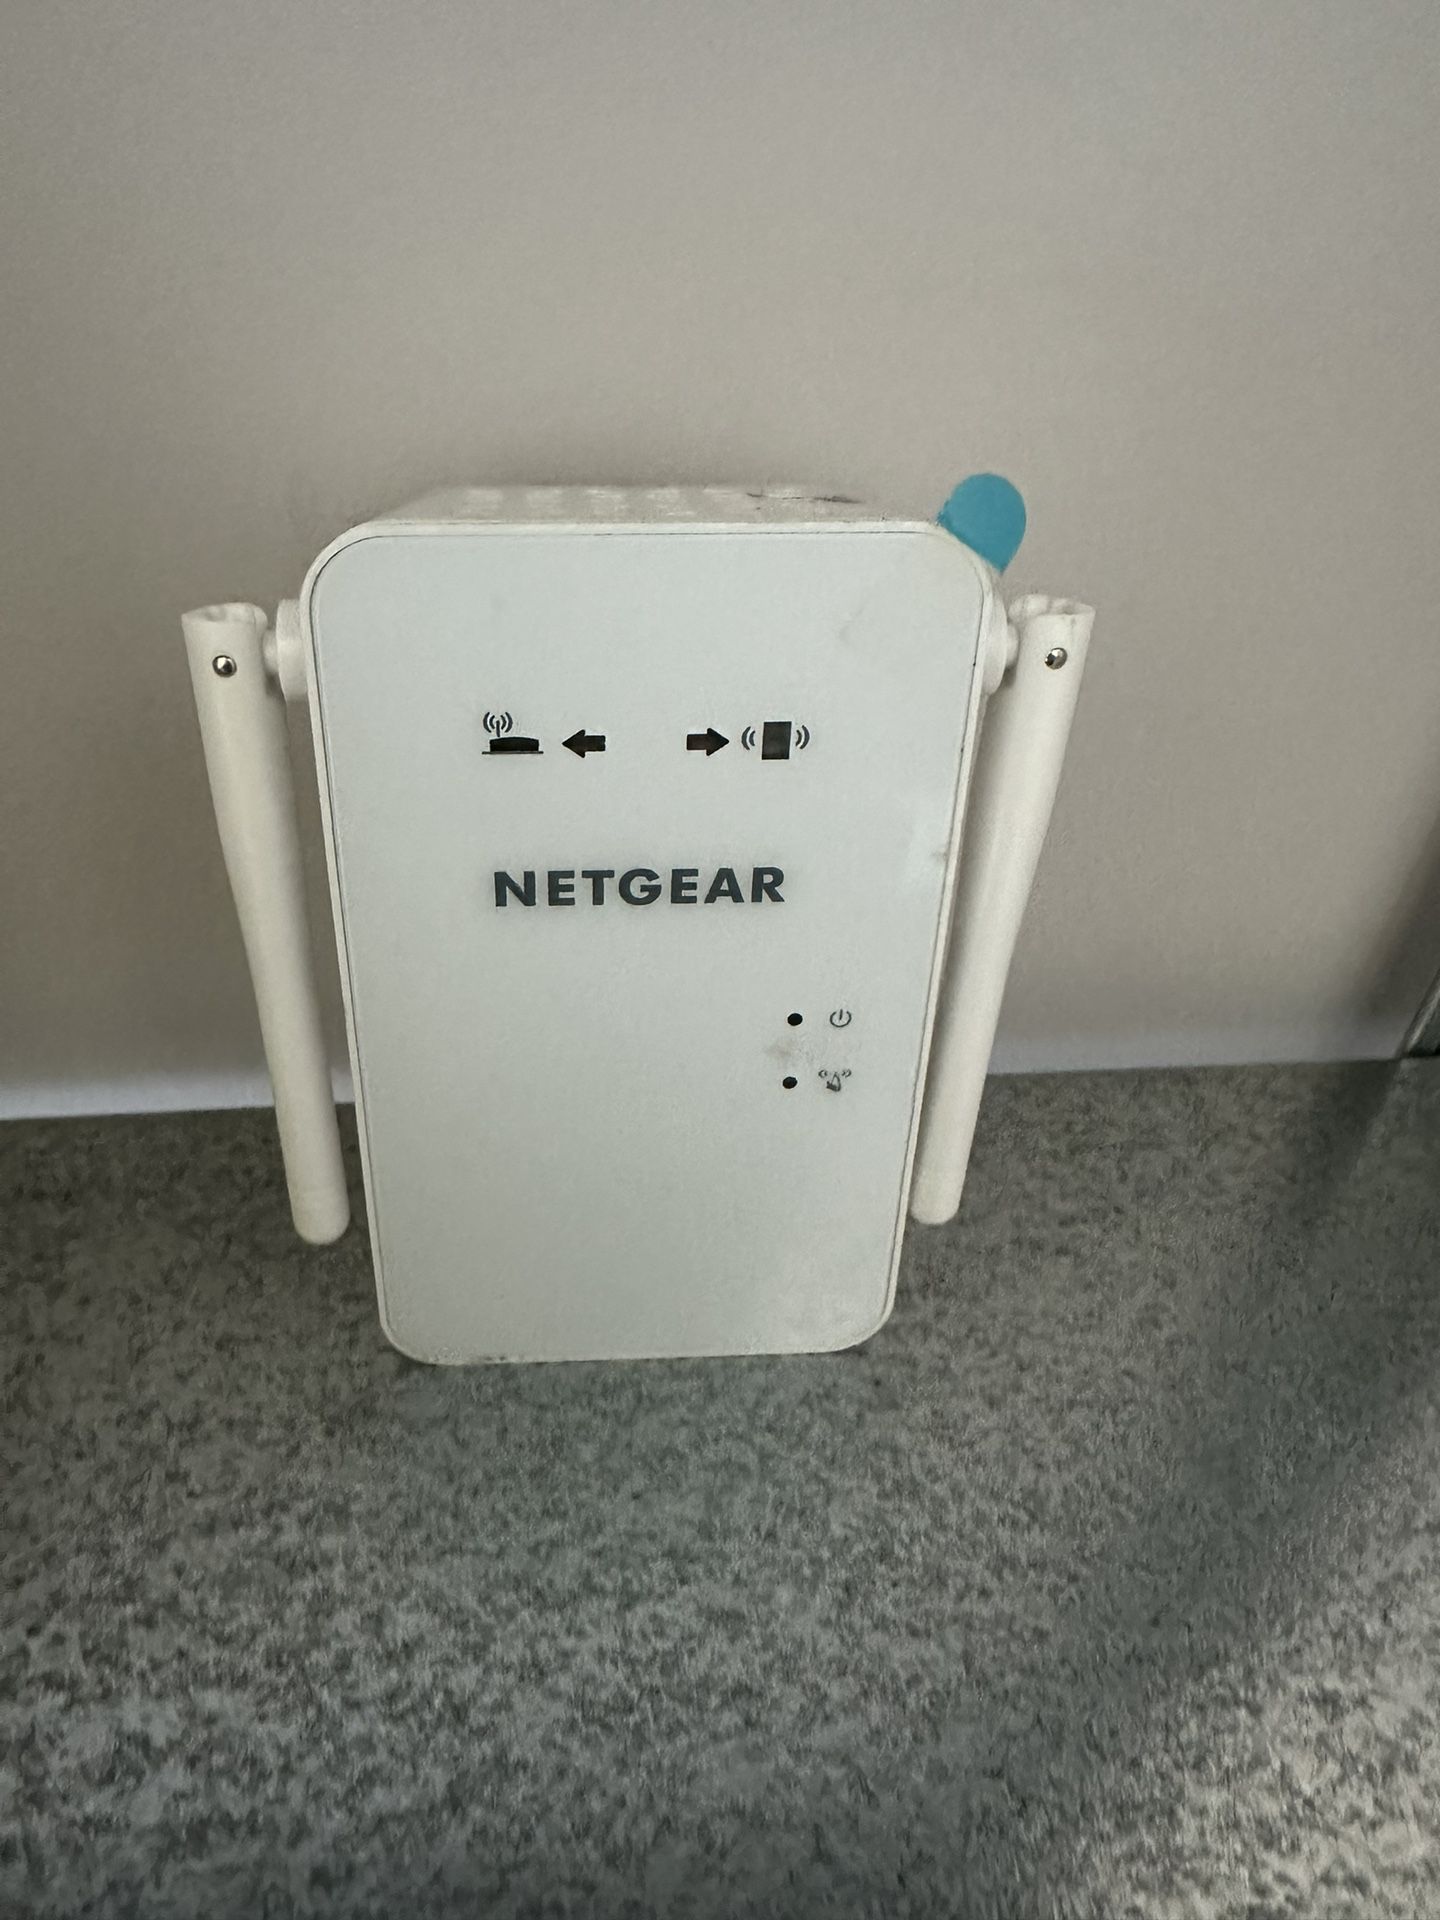 Negrear Wifi Range Extender Model EX6100v2